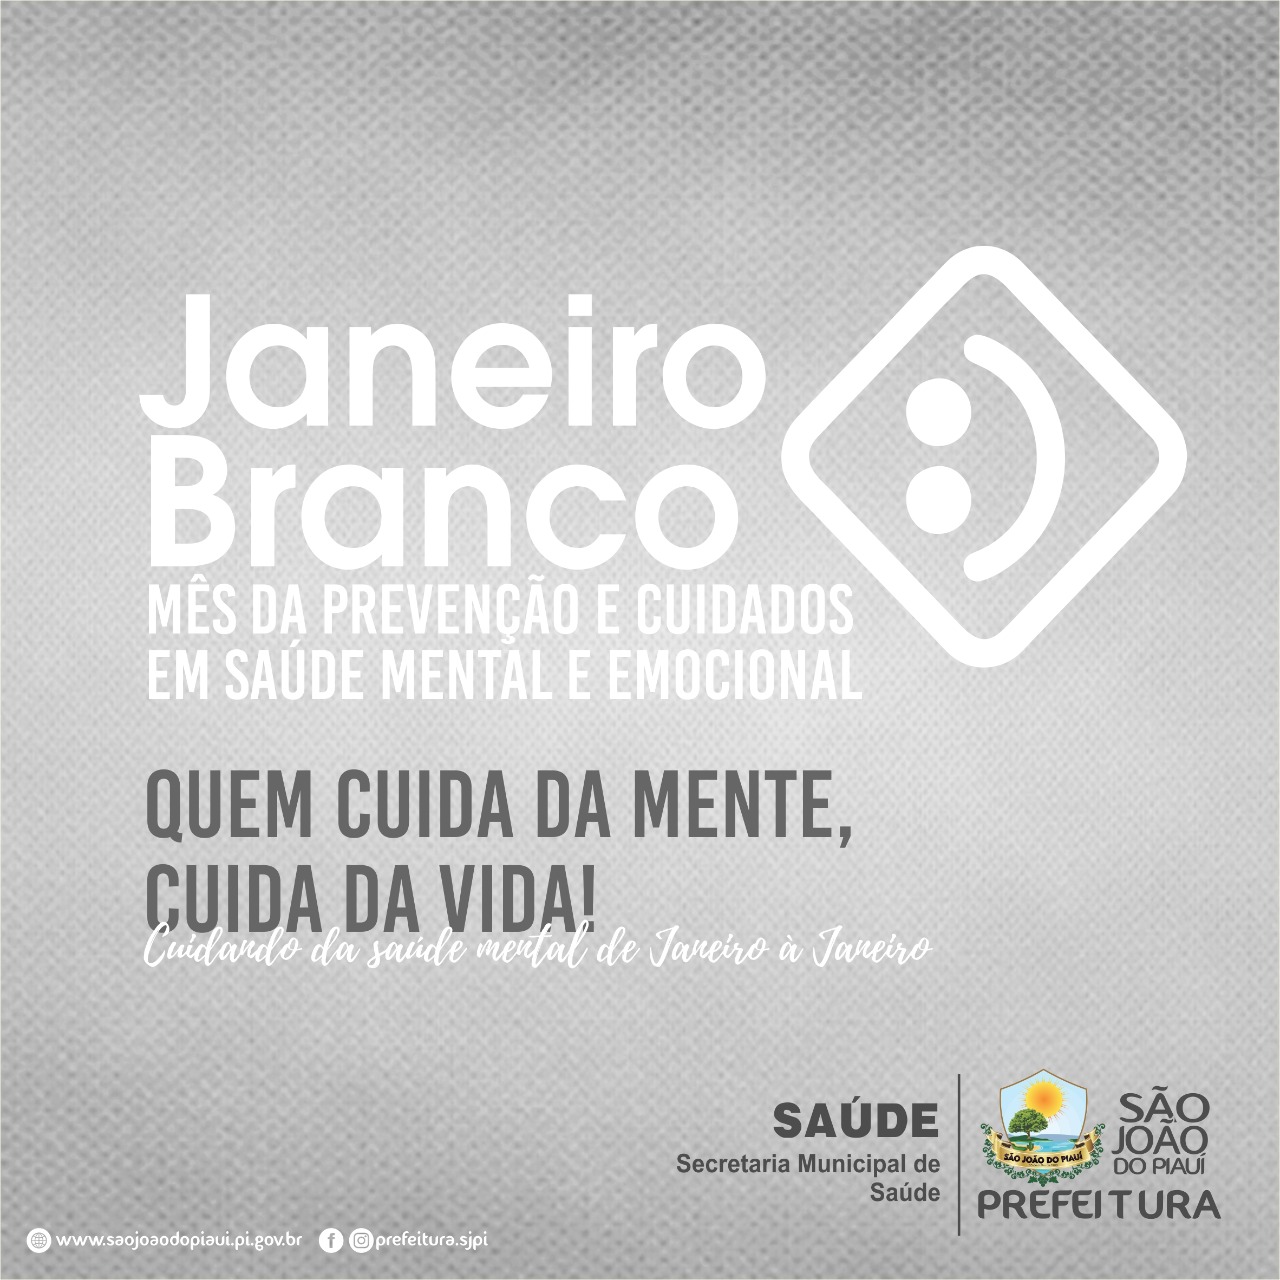 Secretaria de Saúde promove ações para Janeiro Branco e Roxo em São João do Piauí